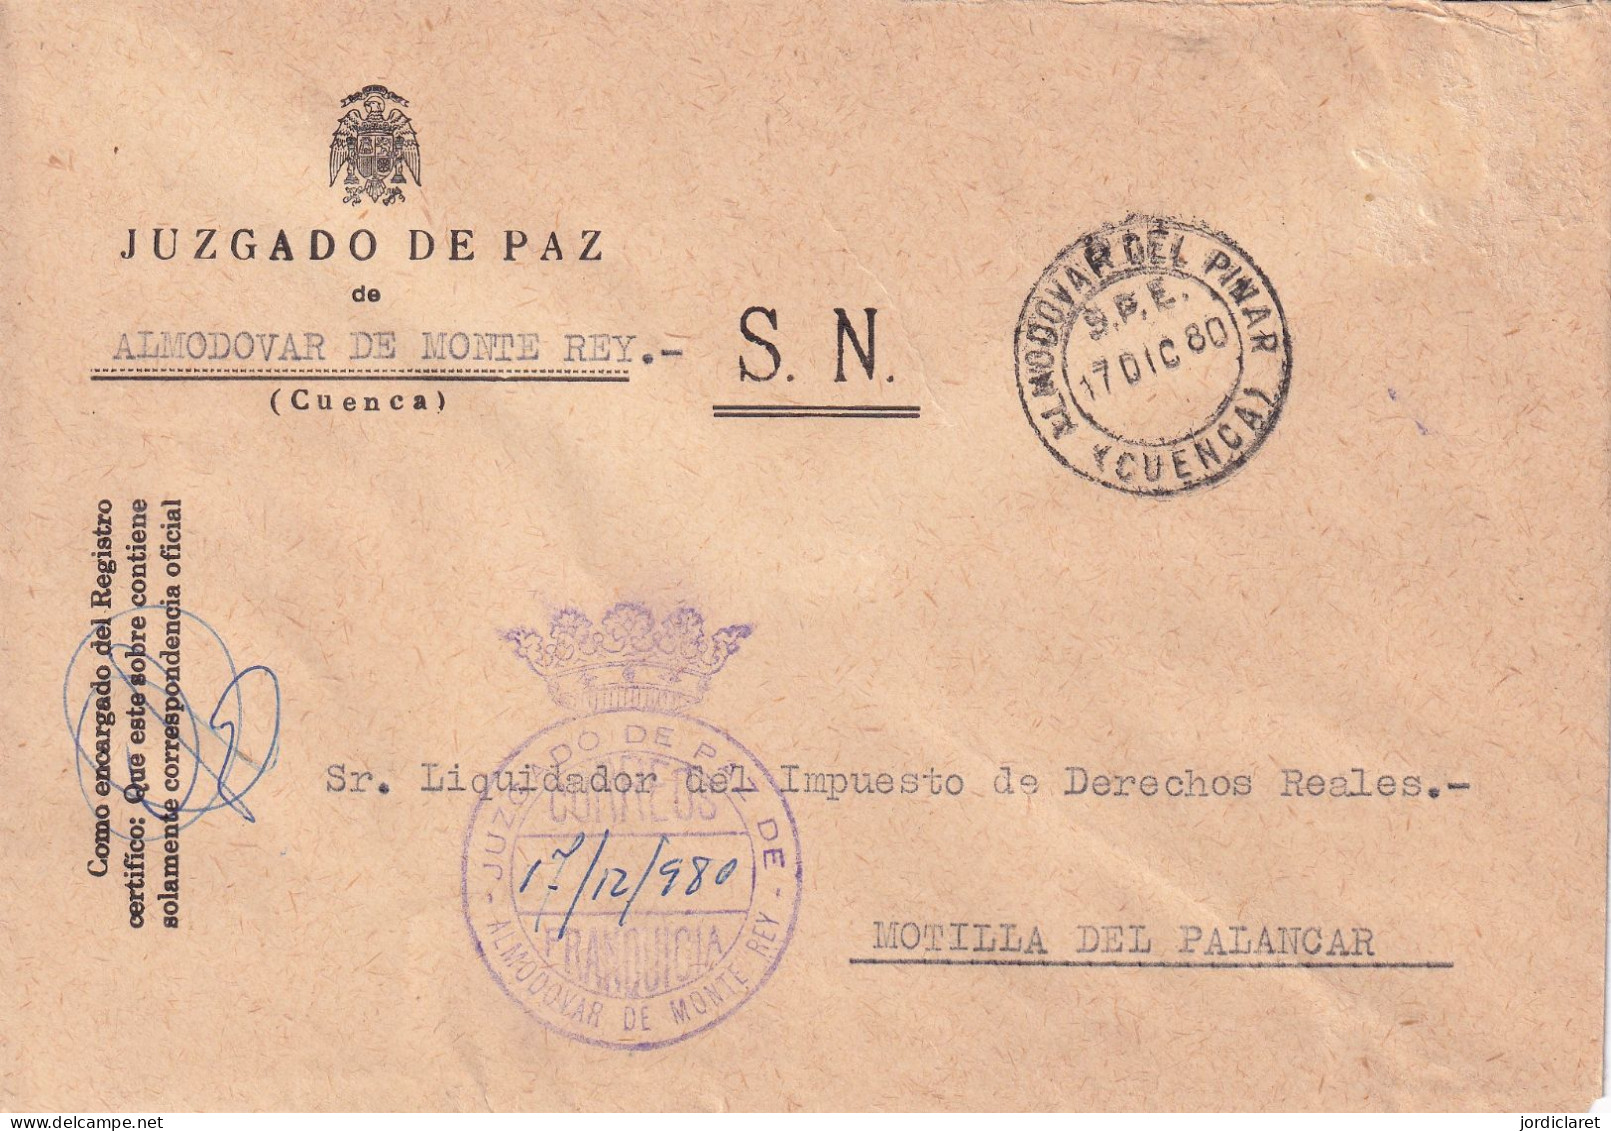 JUZGADO DE PAZ ALMODOVAR DE MONTE REY CUENCA 1980 - Portofreiheit